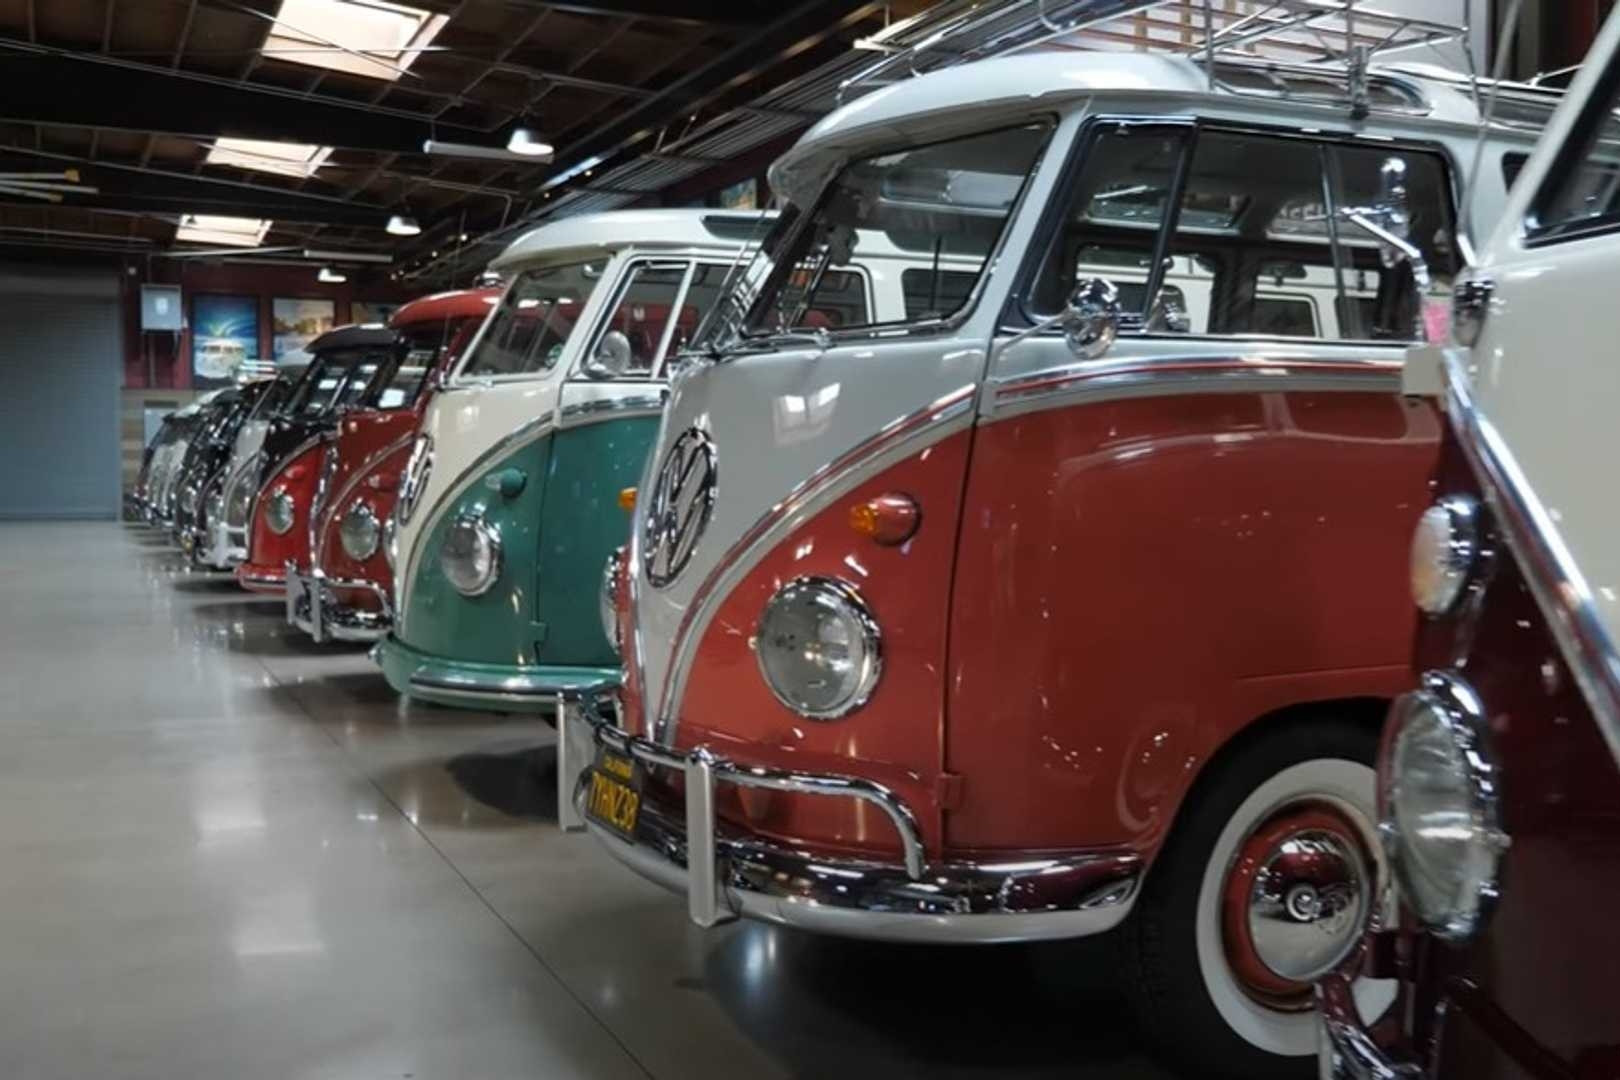 Nam diễn viên hài sở hữu bộ sưu tập xe Volkswagen cổ hàng hiếm